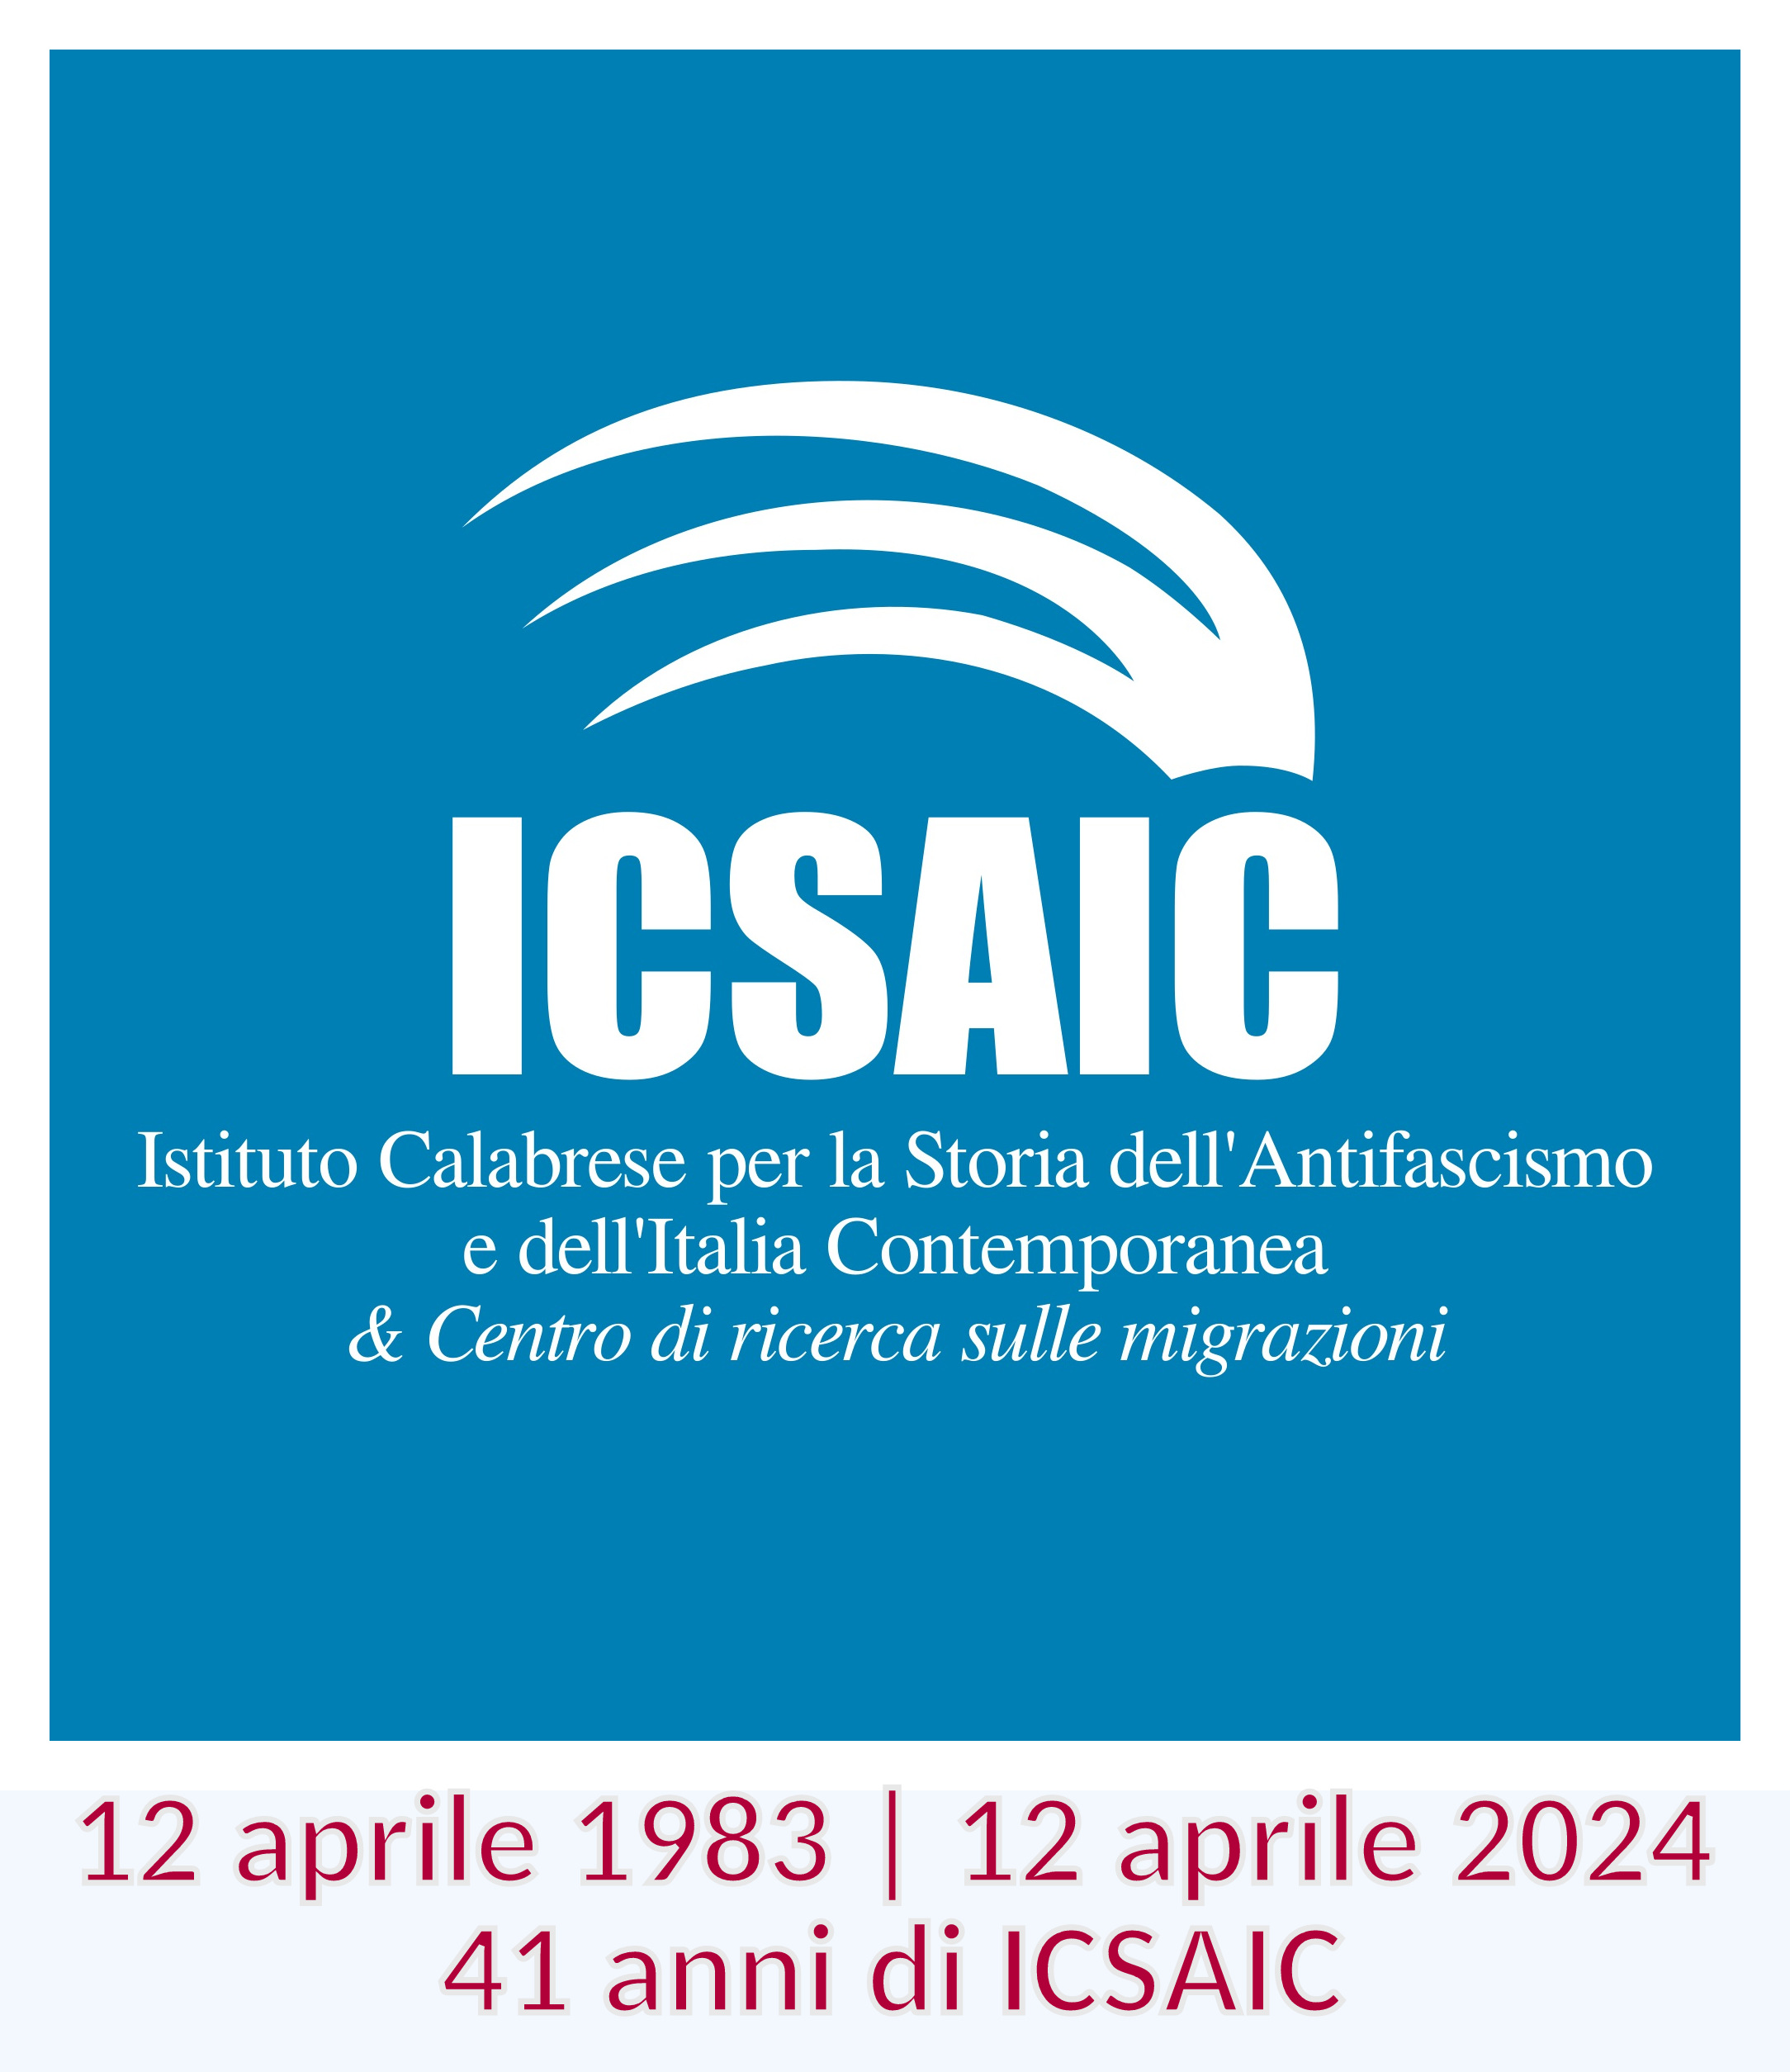 Il compleanno dell’ICSAIC: 41